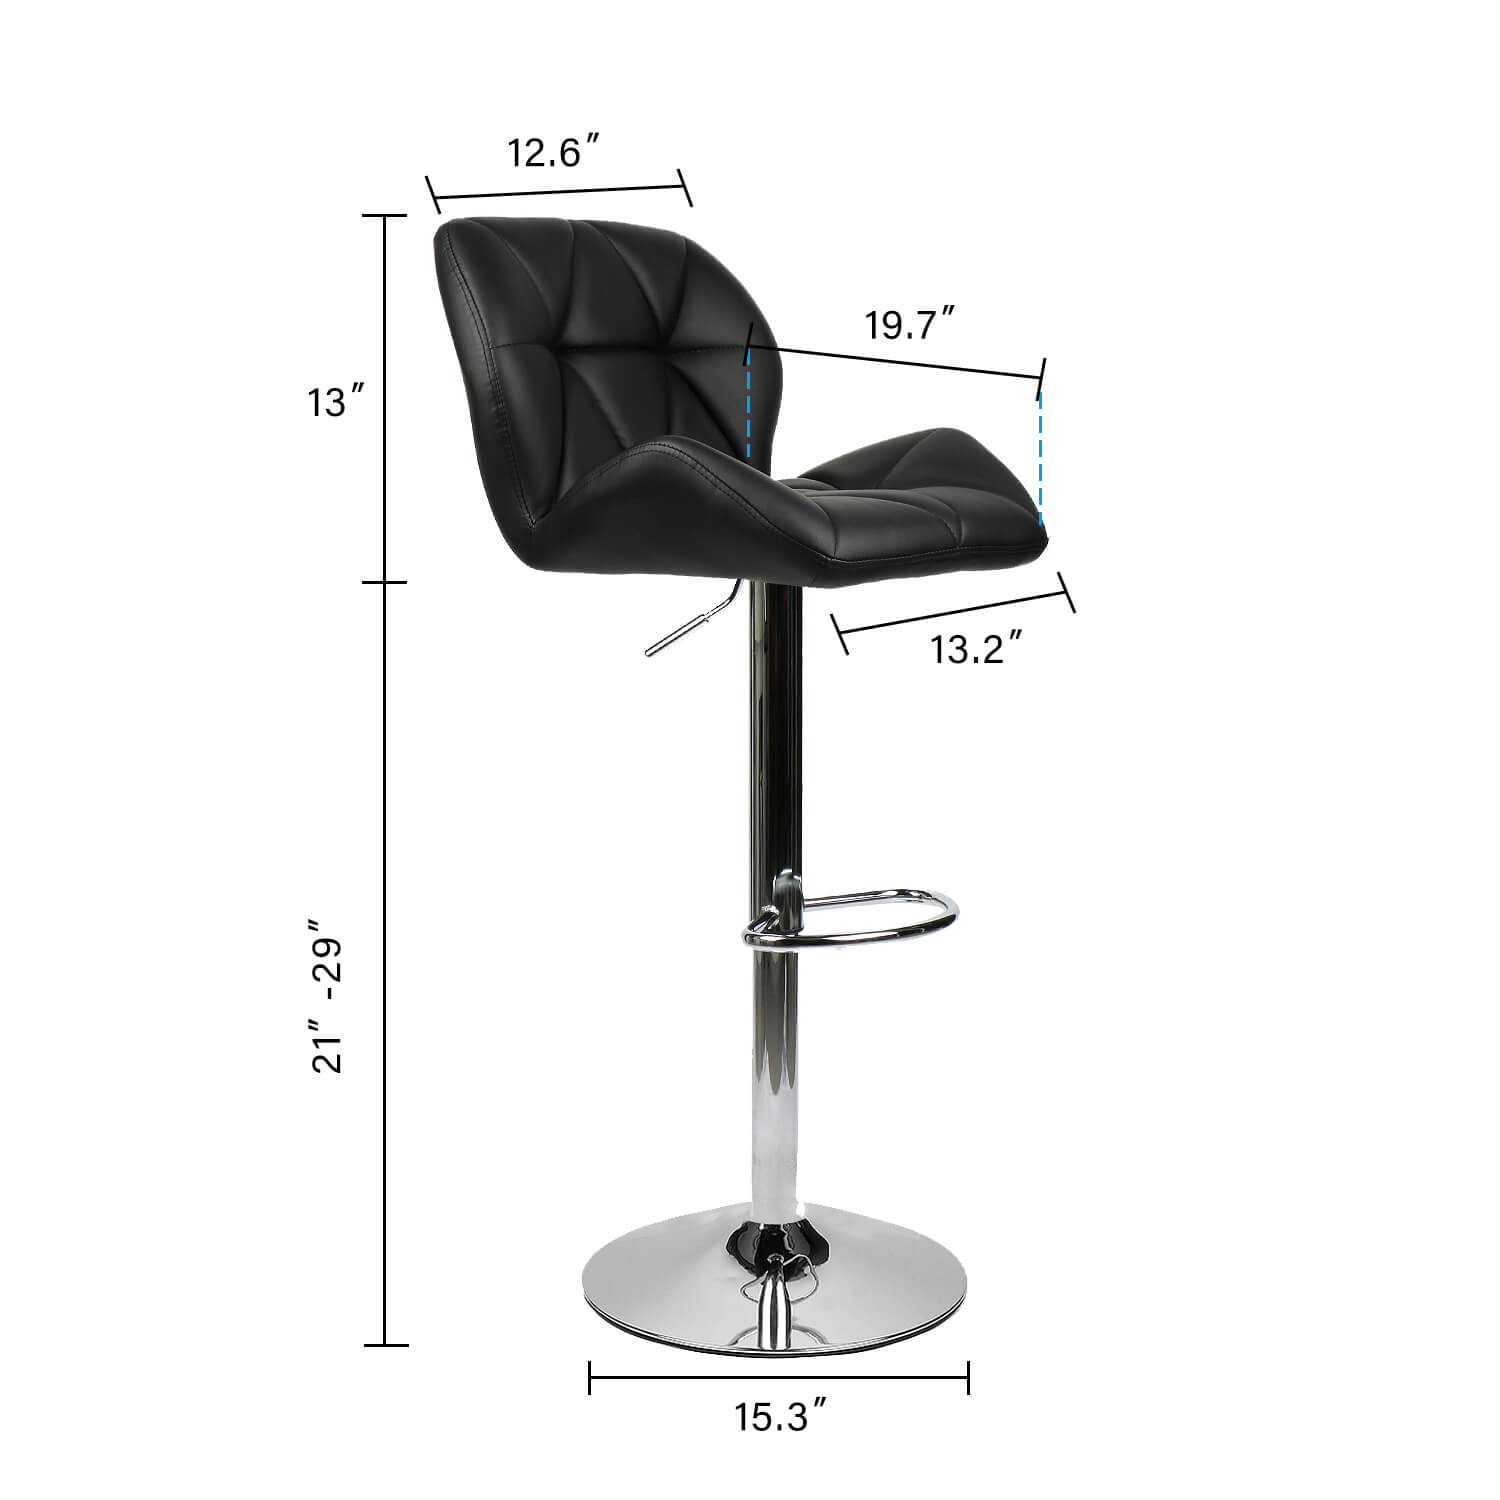 Elecwish black bar stool size